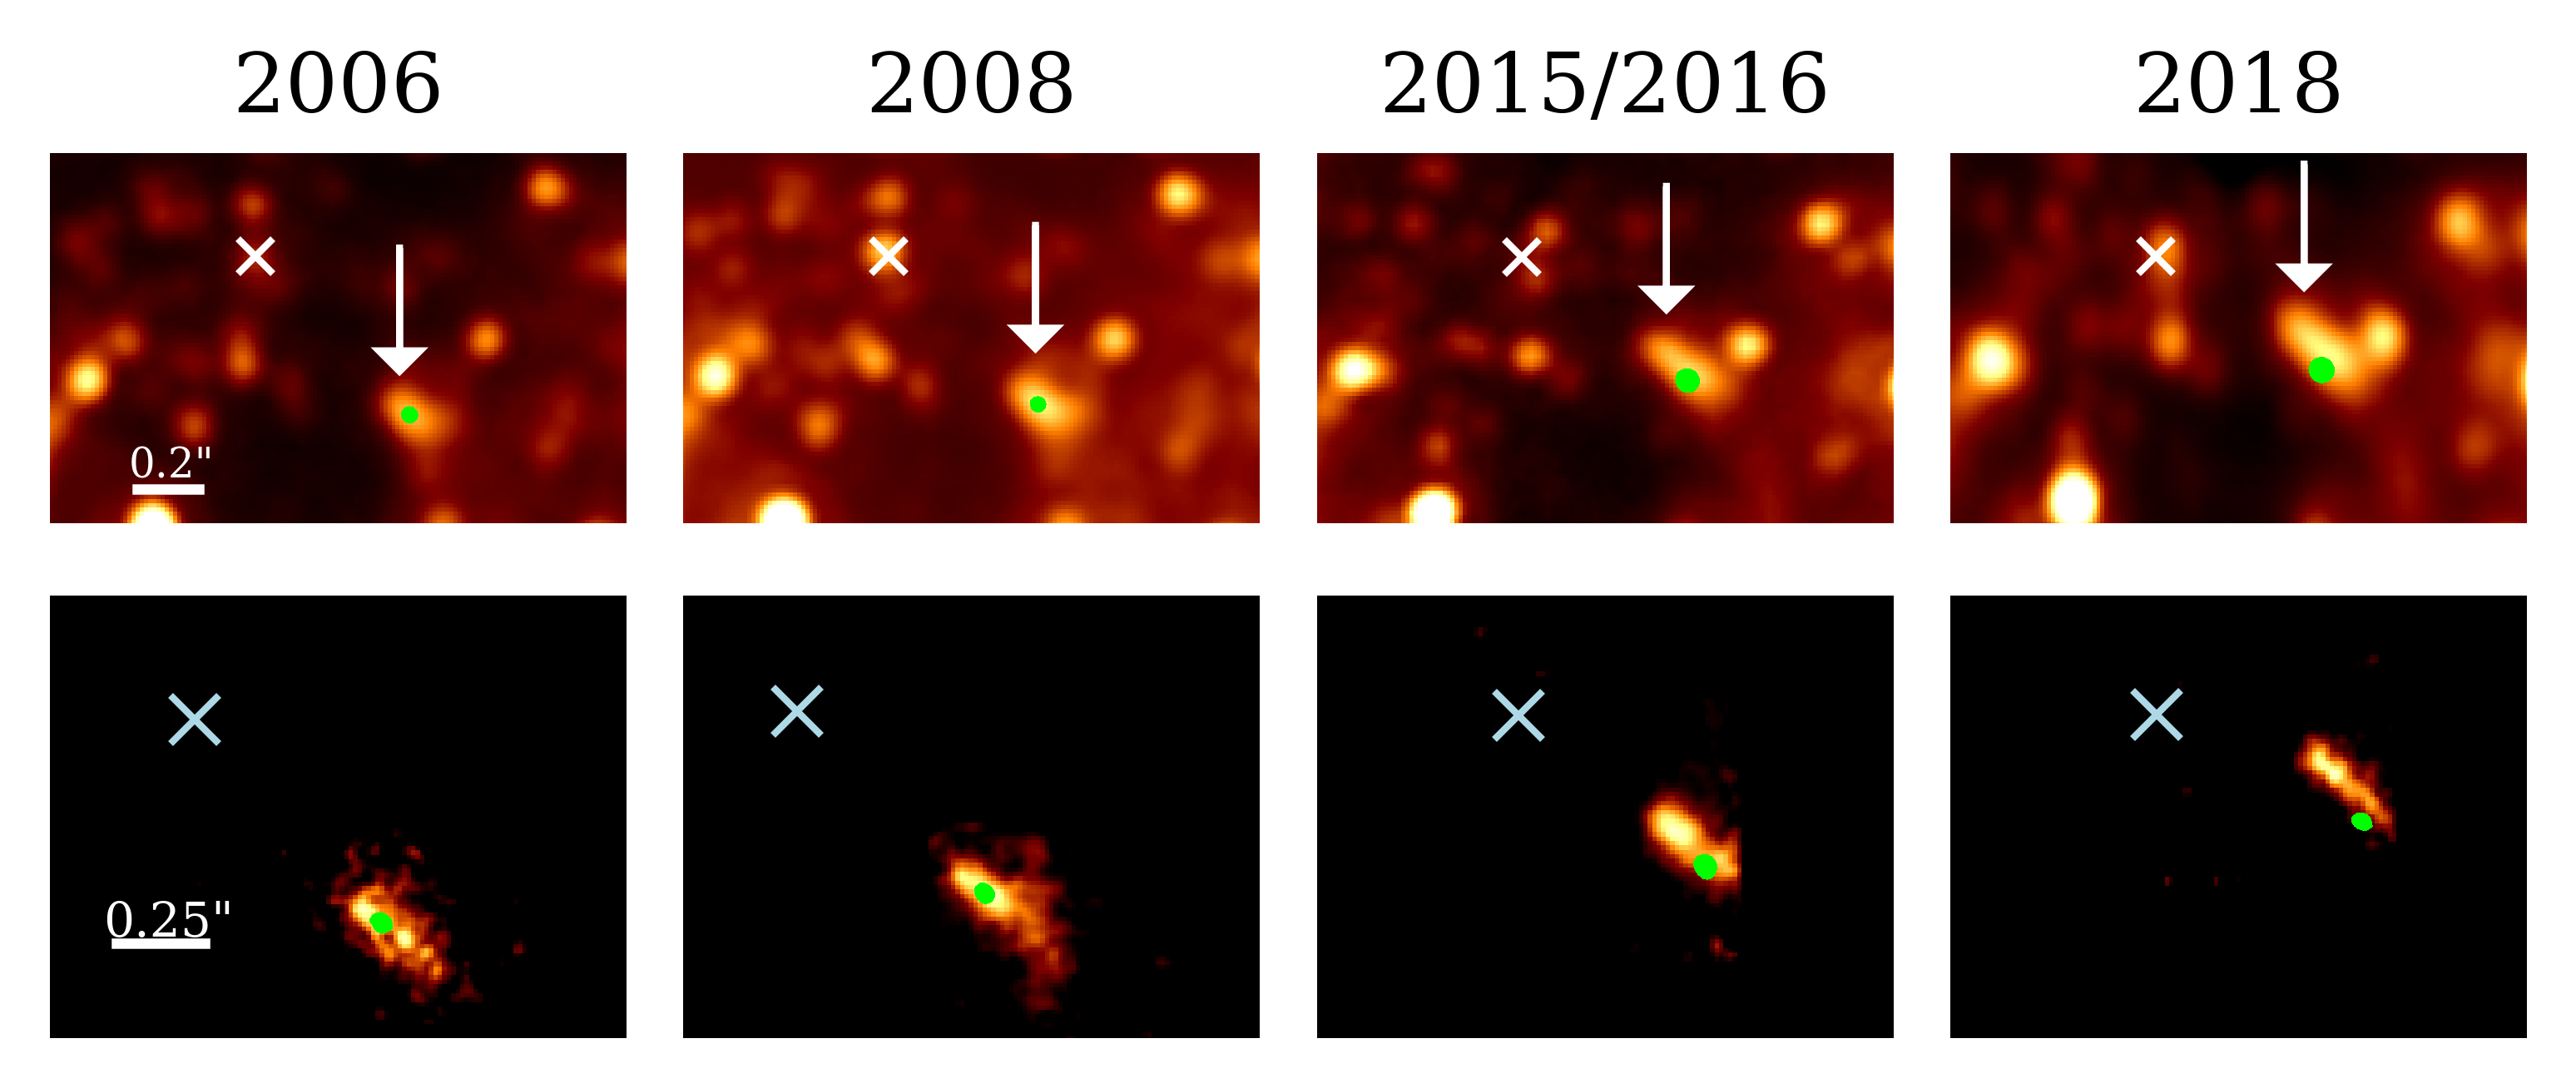 Obr. 4.: Sekvence infračervených snímků zachycuje pohyb zdroje X7 směrem nahoru, tj.  na sever v průběhu let 2006 - 2018. Horní řada je zhotovena v infračerveném kontinuu na vlnové délce 3,8 mikrometru. Dolní řada sestává ze záběrů pořízených v čáře vodíku Br-gamma v okolí 2,16 mikronu. Zelený bod označuje polohu hvězdy S50, která je původcem objektu X7 (Peissker et al., 2021, The Astrophysical Journal, 909, 62).